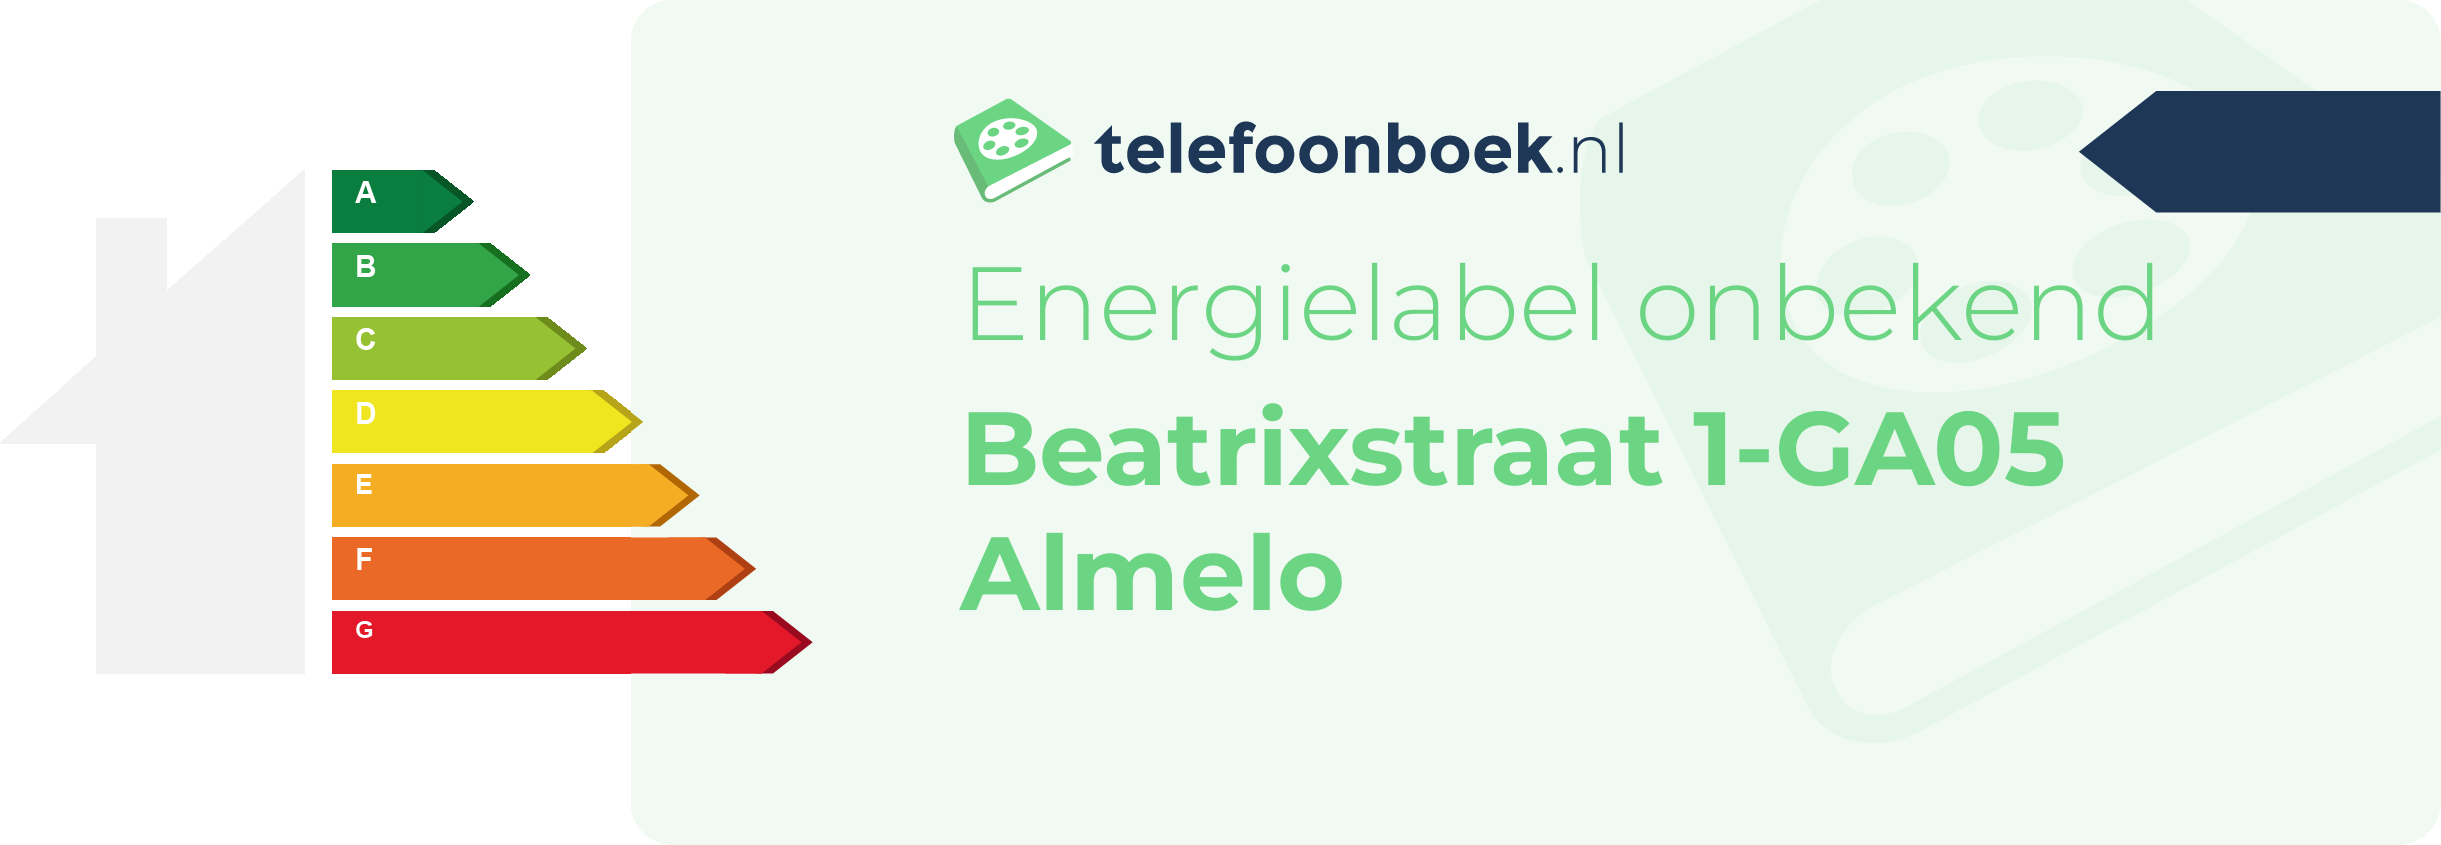 Energielabel Beatrixstraat 1-GA05 Almelo